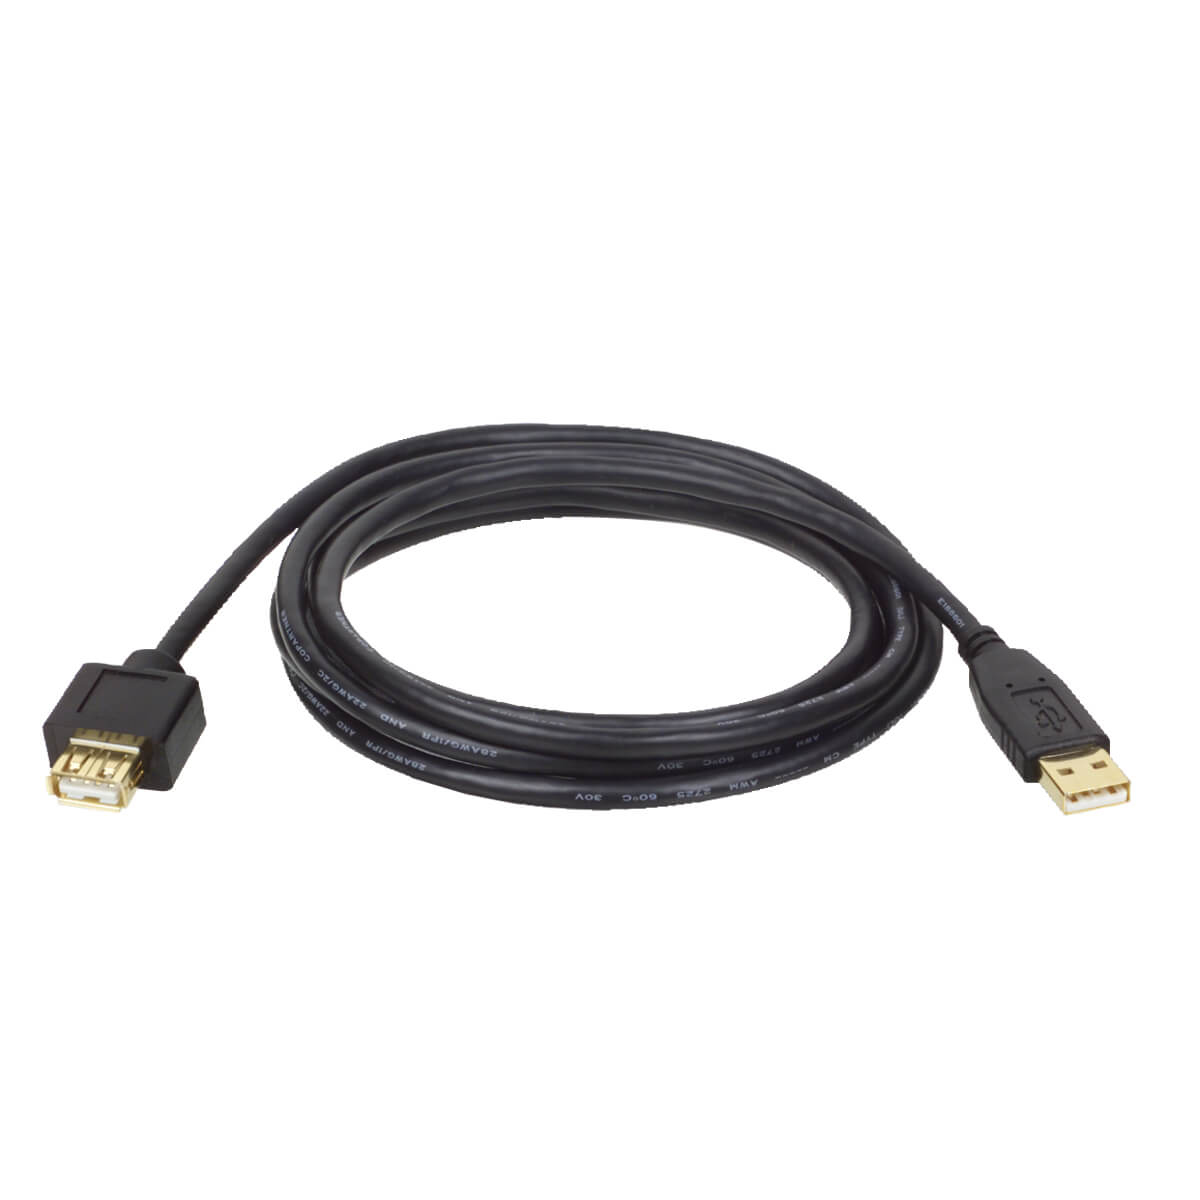 Cable Usb 2.0 Tripp Lite Macho-Usb 2.0 A Hembra 1.83 M U024-006